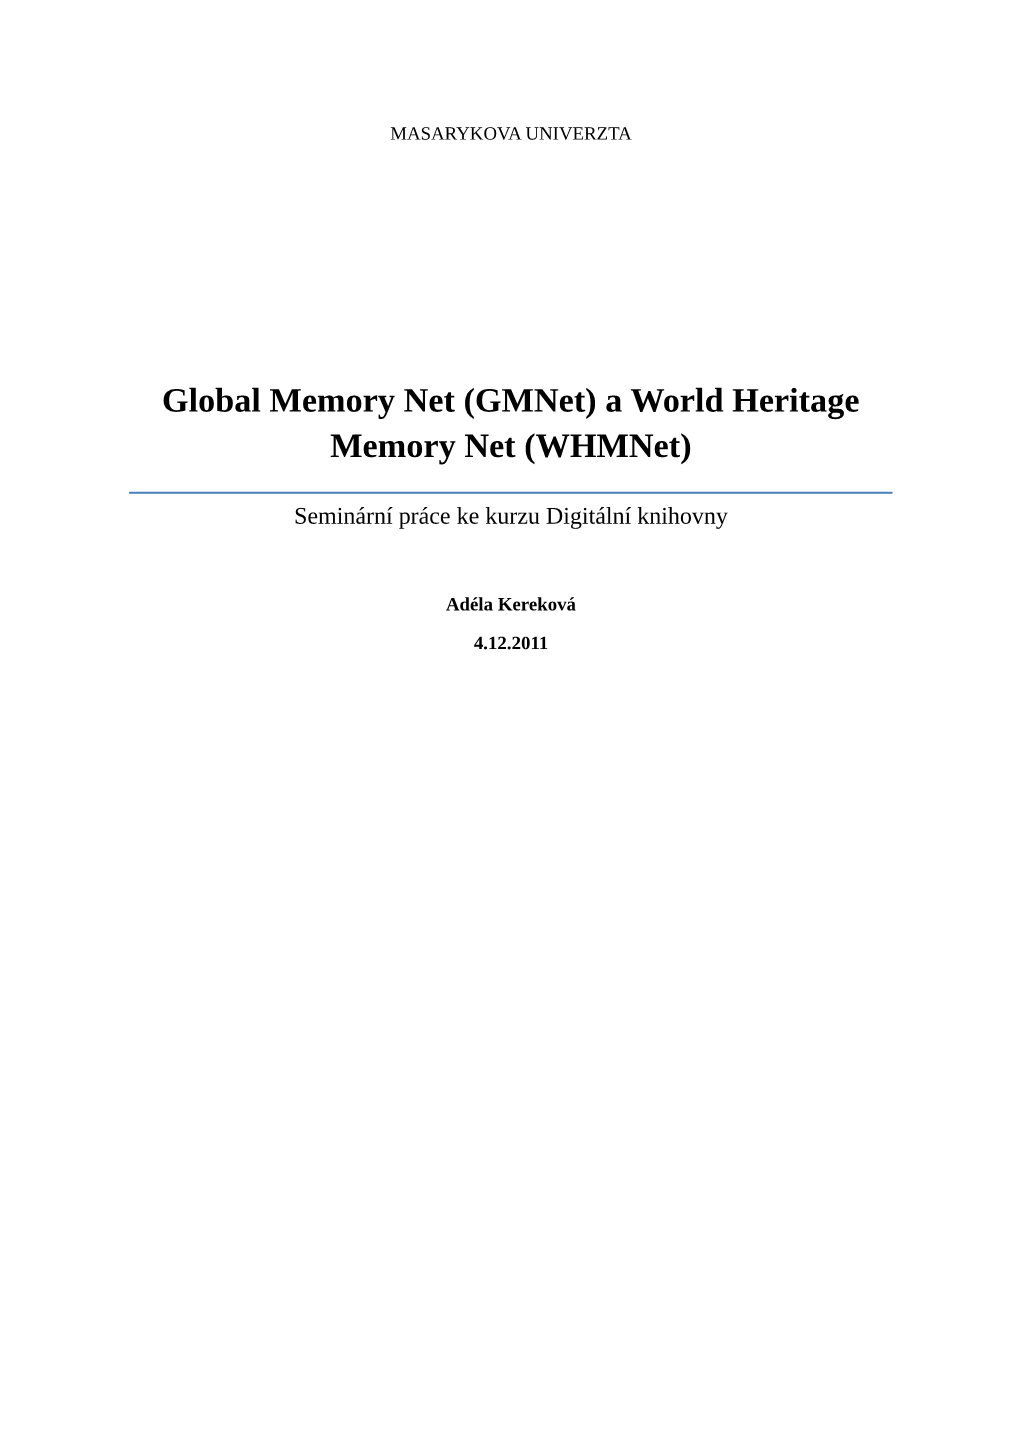 Global Memory Net (Gmnet) a World Heritage Memory Net (Whmnet)